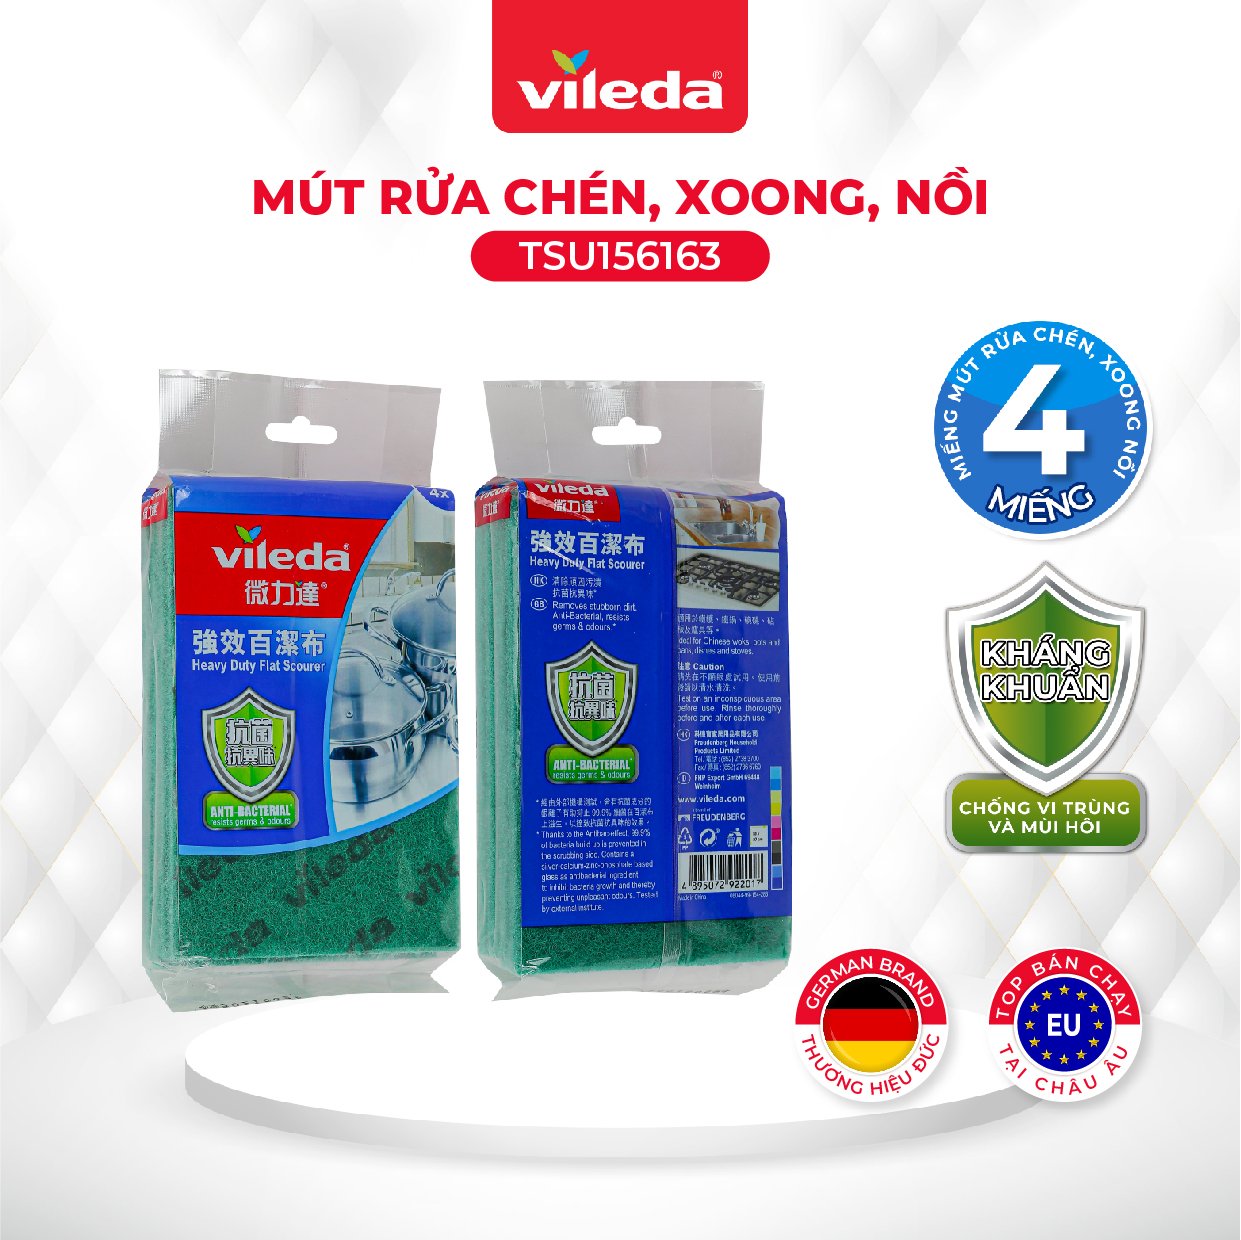 Miếng rửa chén VILEDA gói 4 miếng loại cứng, cọ rửa mọi vết bẩn nhà bếp, chống vi khuẩn gây mùi - TSU156163